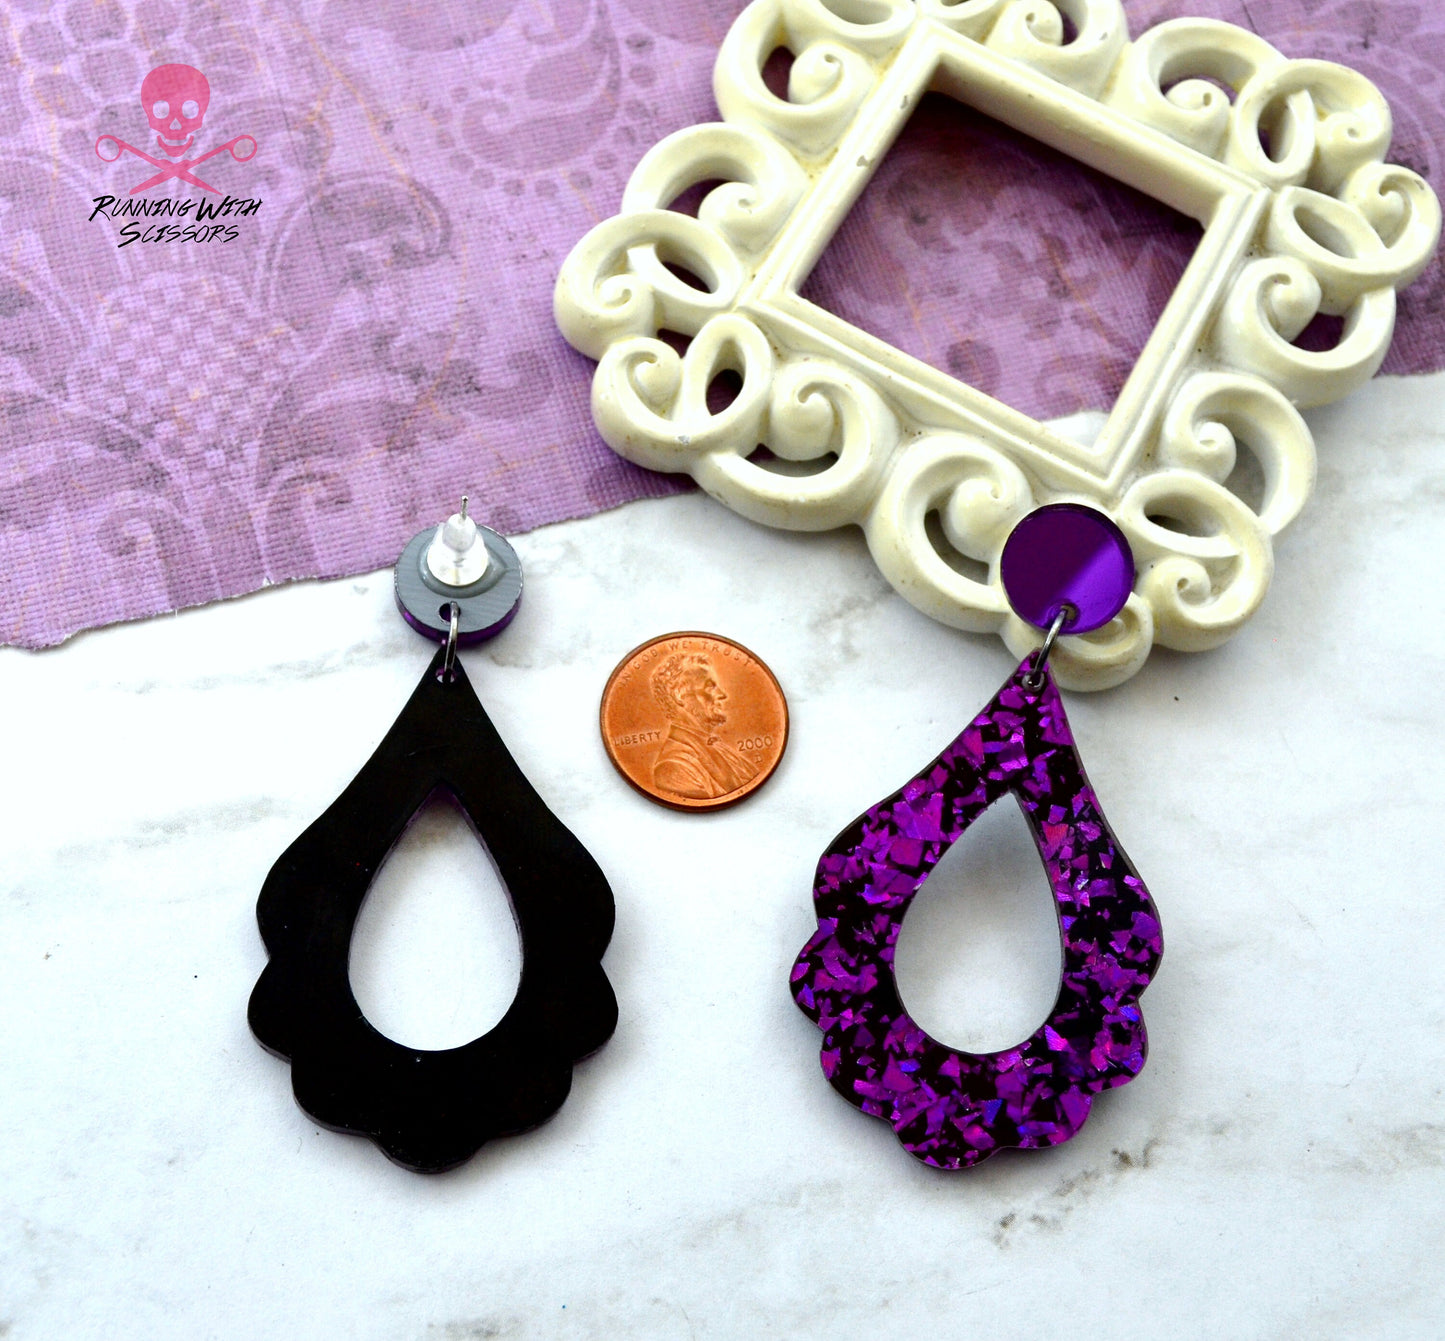 SALE Flourish Hoops in Purple Foil Dangles - Laser Cut Acrylic Earrings